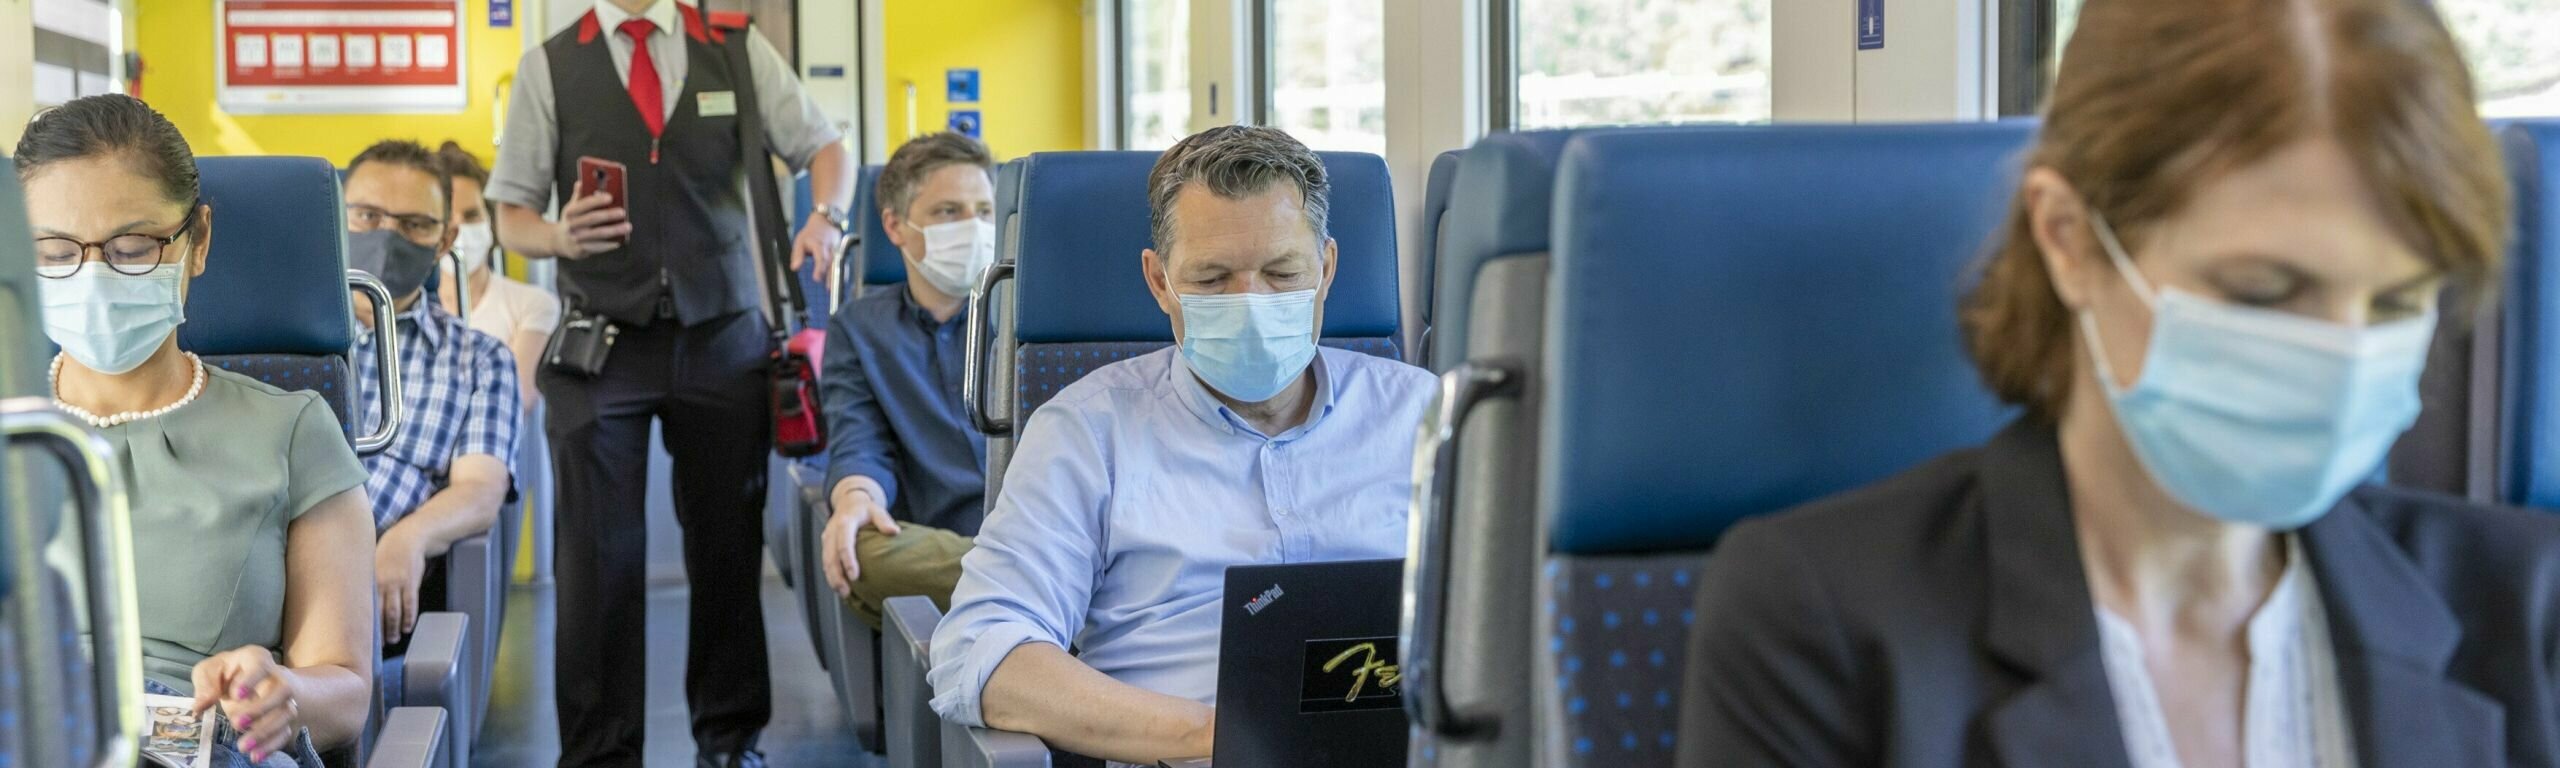 Kunden sitzen mit Maske im Zug.